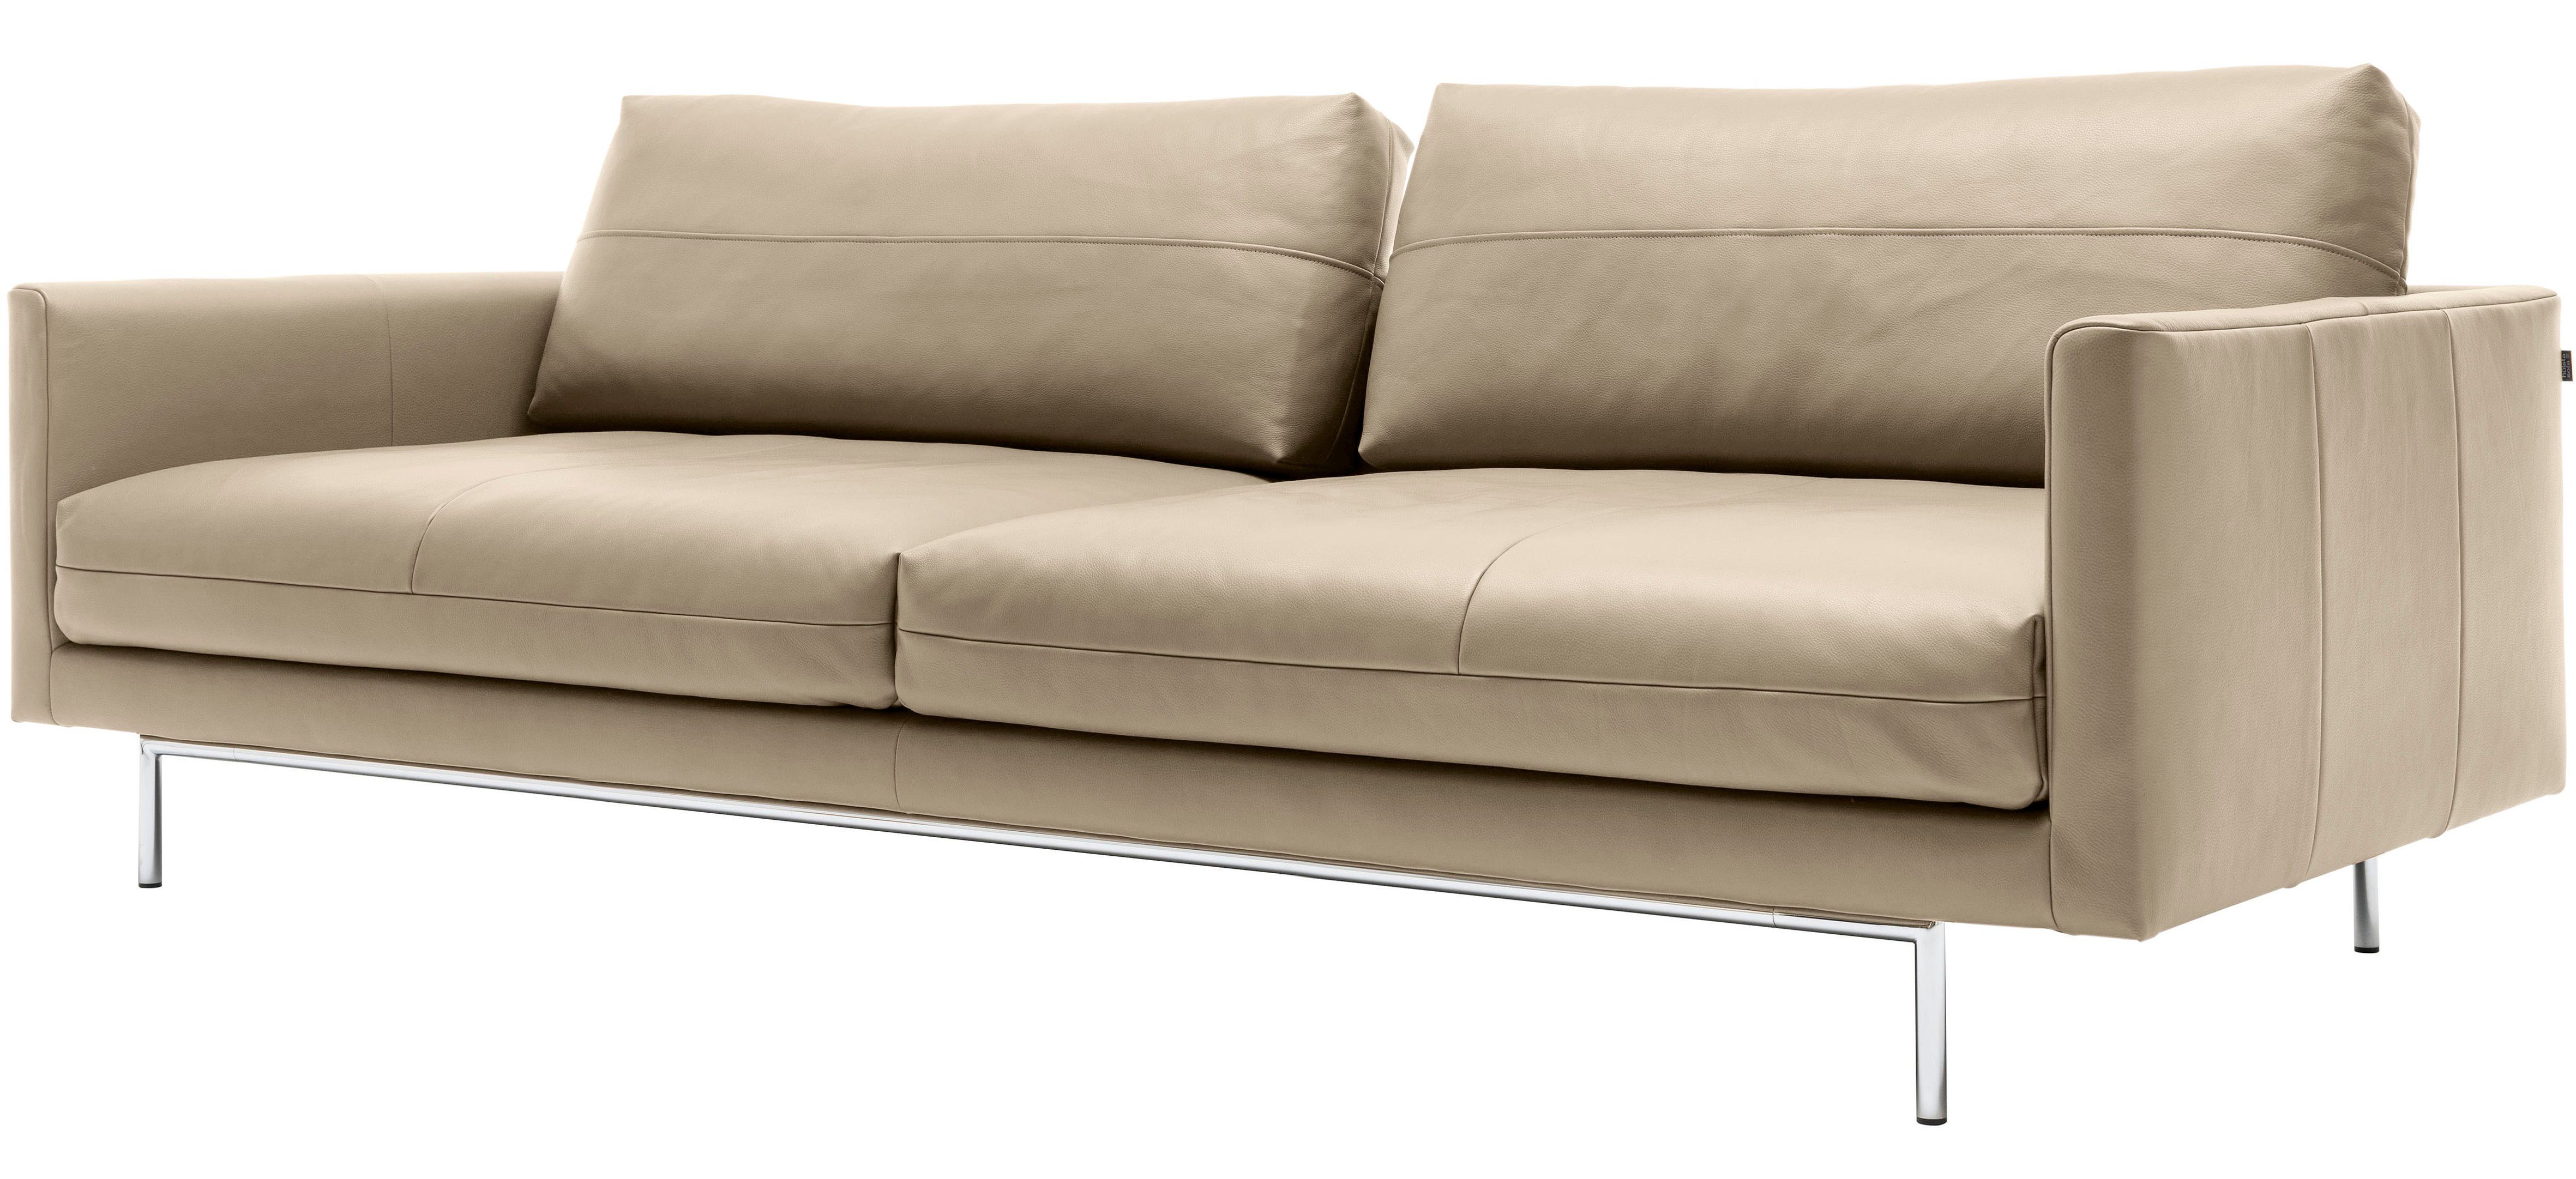 3,5-Sitzer hülsta sofa